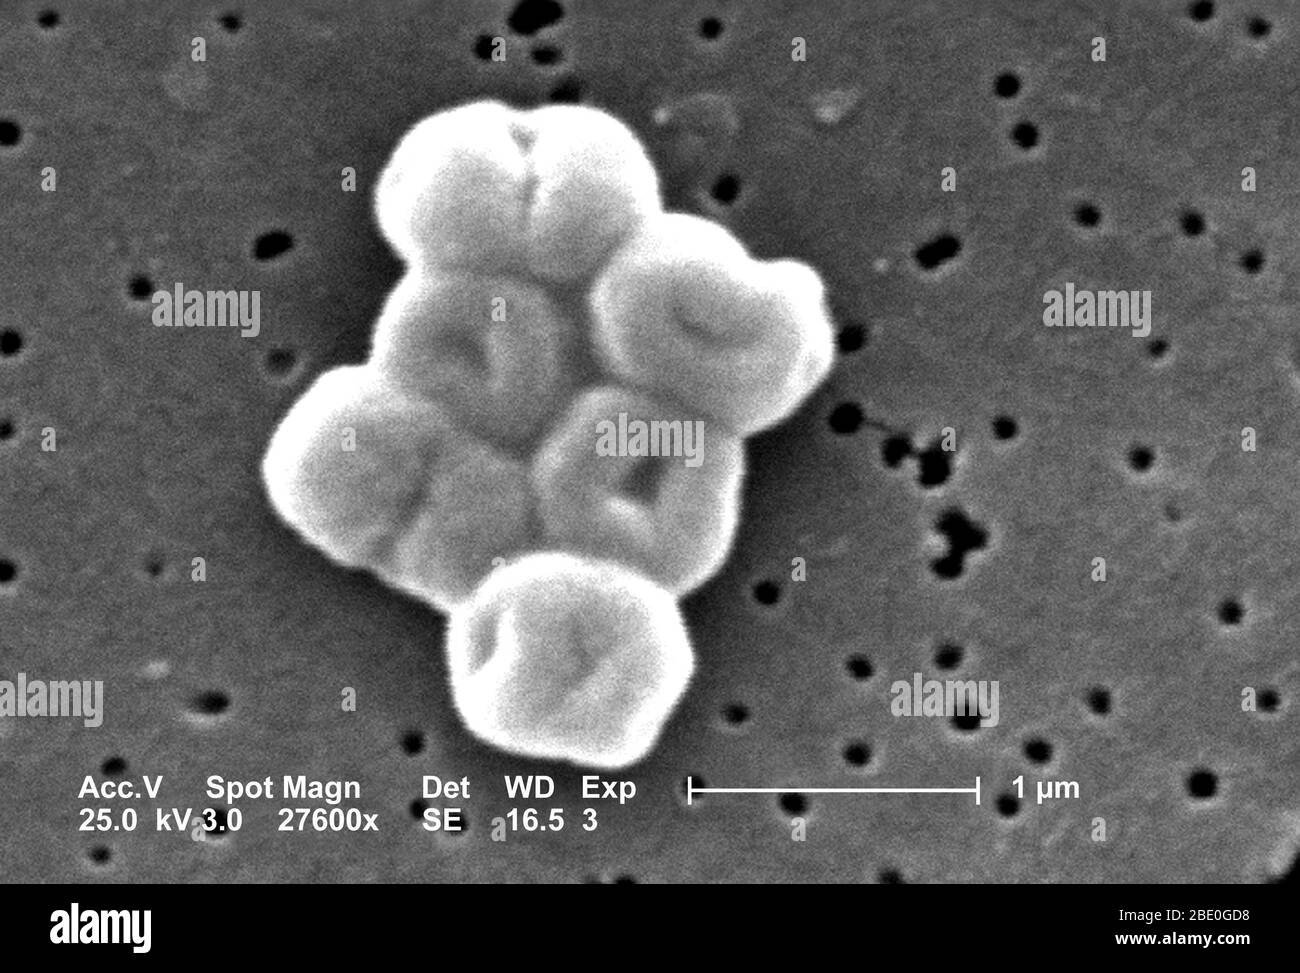 Questo SEM raffigura un gruppo molto ingrandito di batteri acinetobacter baumannii Gram-negativi, non-motile; Mag - 27600x. I membri del genere Acinetobacter sono verghe non mottili, di 1-1.5µm di diametro e di 1.5-2.5µm di lunghezza, diventando di forma sferica durante la loro fase stazionaria di crescita. Gli spinetobacter spp. Sono ampiamente distribuiti in natura, e sono normali flora sulla pelle. Alcuni membri del genere sono importanti perché sono una causa emergente di infezioni polmonari acquisite in ospedale, ad esempio polmonite, emopatiche e ferite. Foto Stock